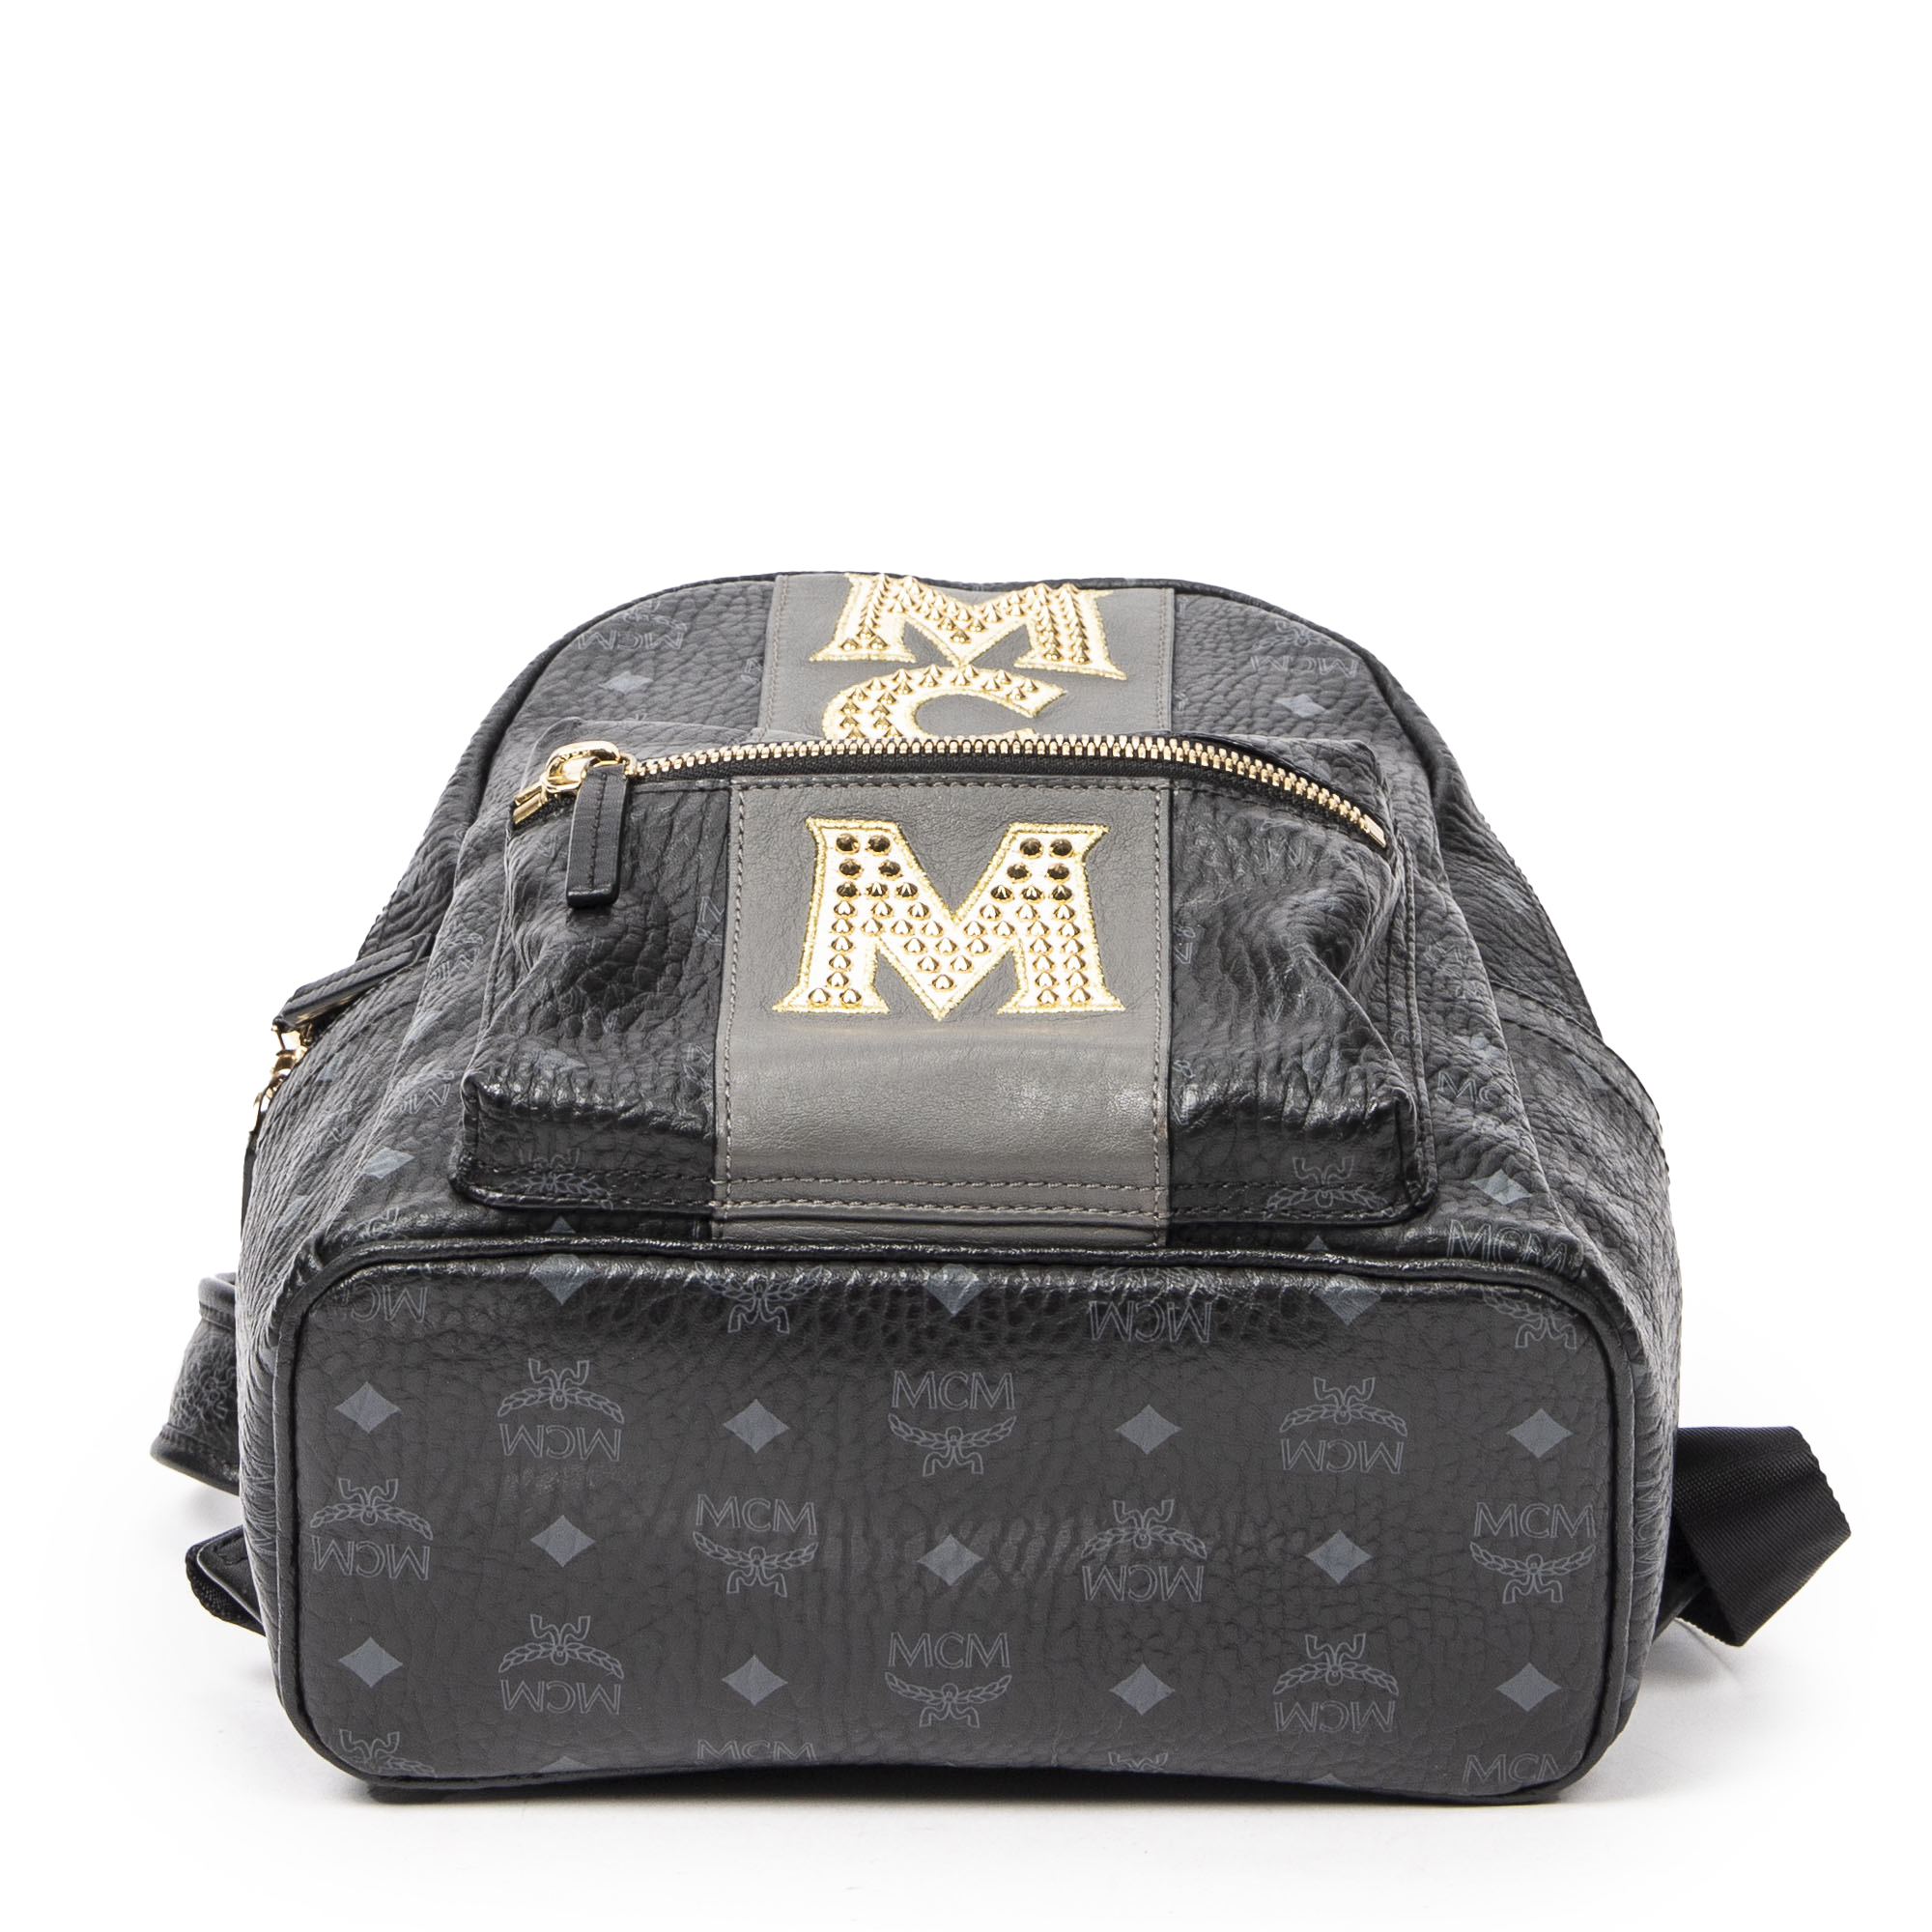 Mcm Stark 32 Visetos Backpack - Black - Backpacks